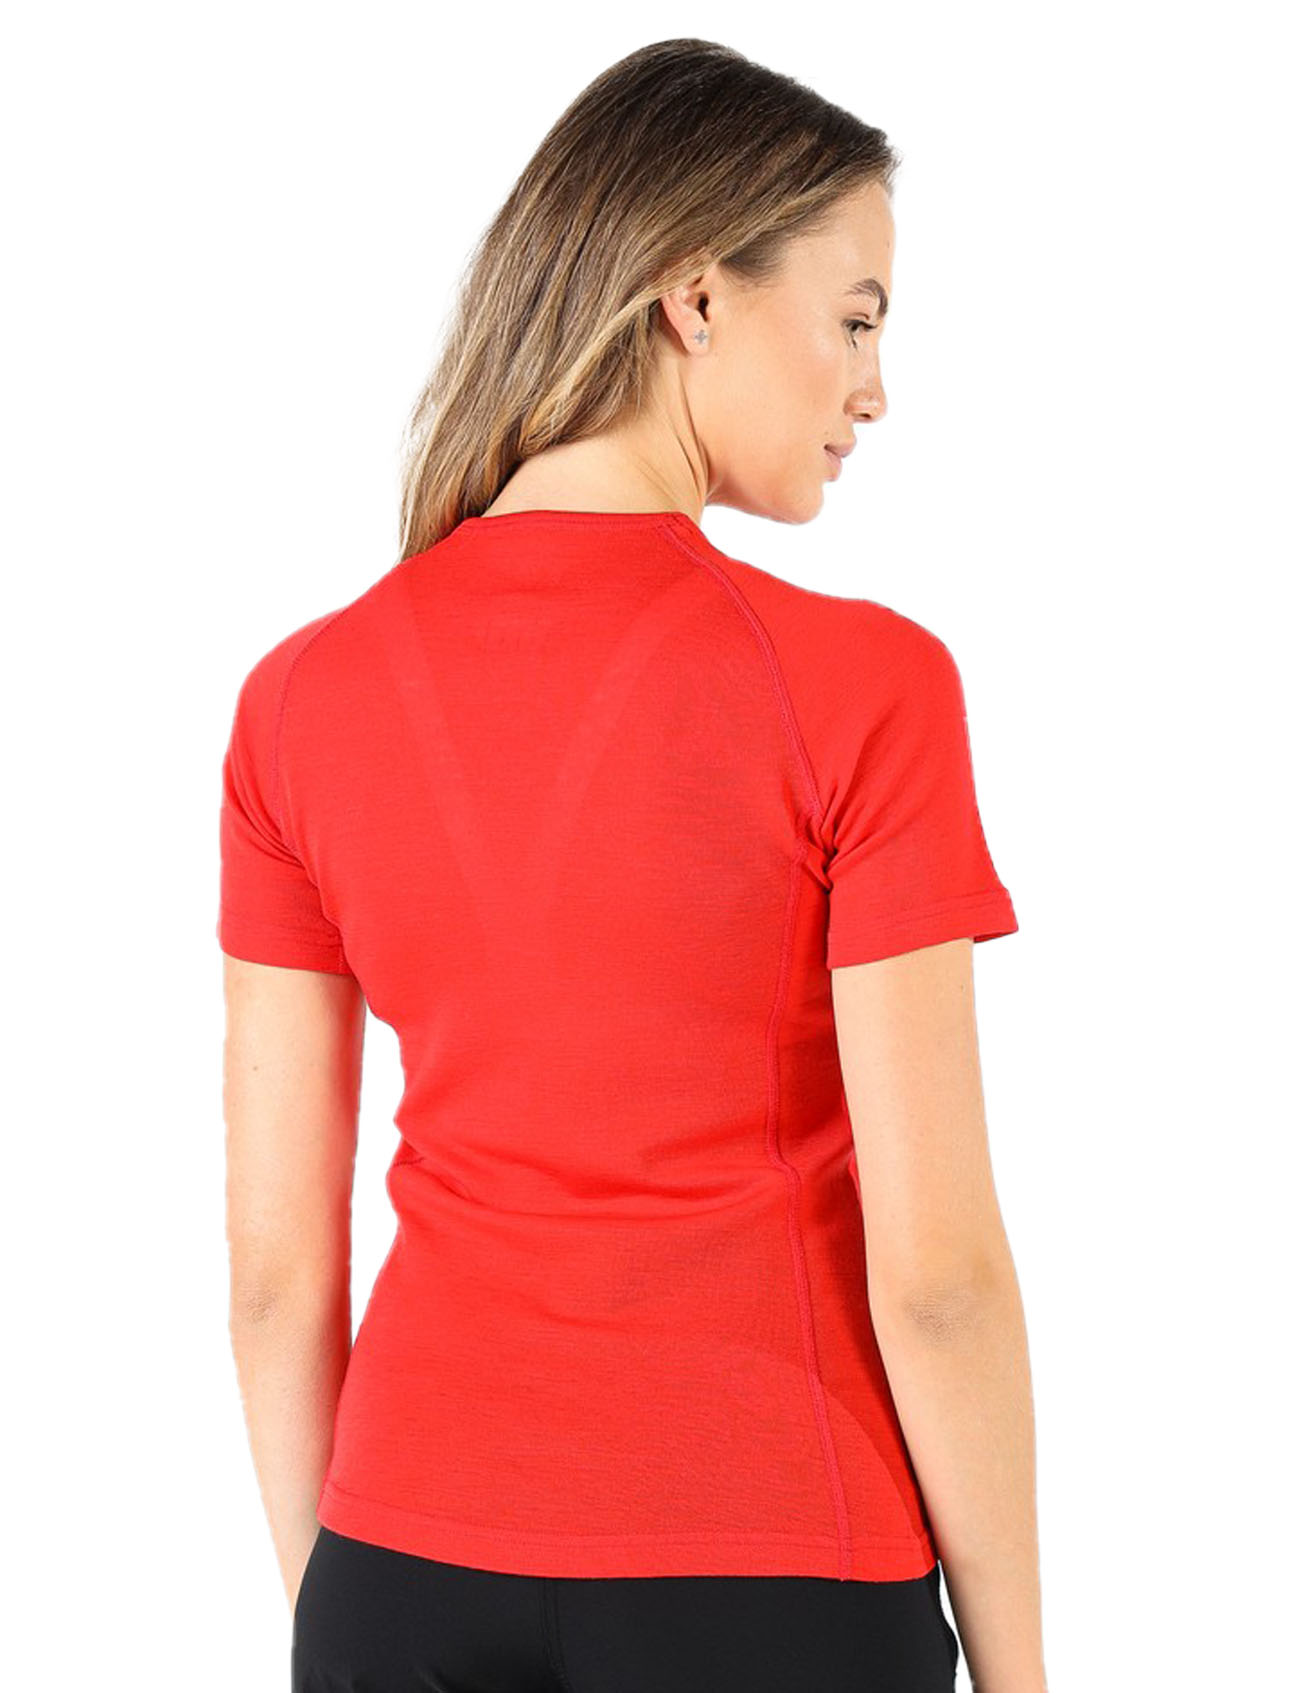 Women's Merino Bise Short Sleeve T-Shirt Red